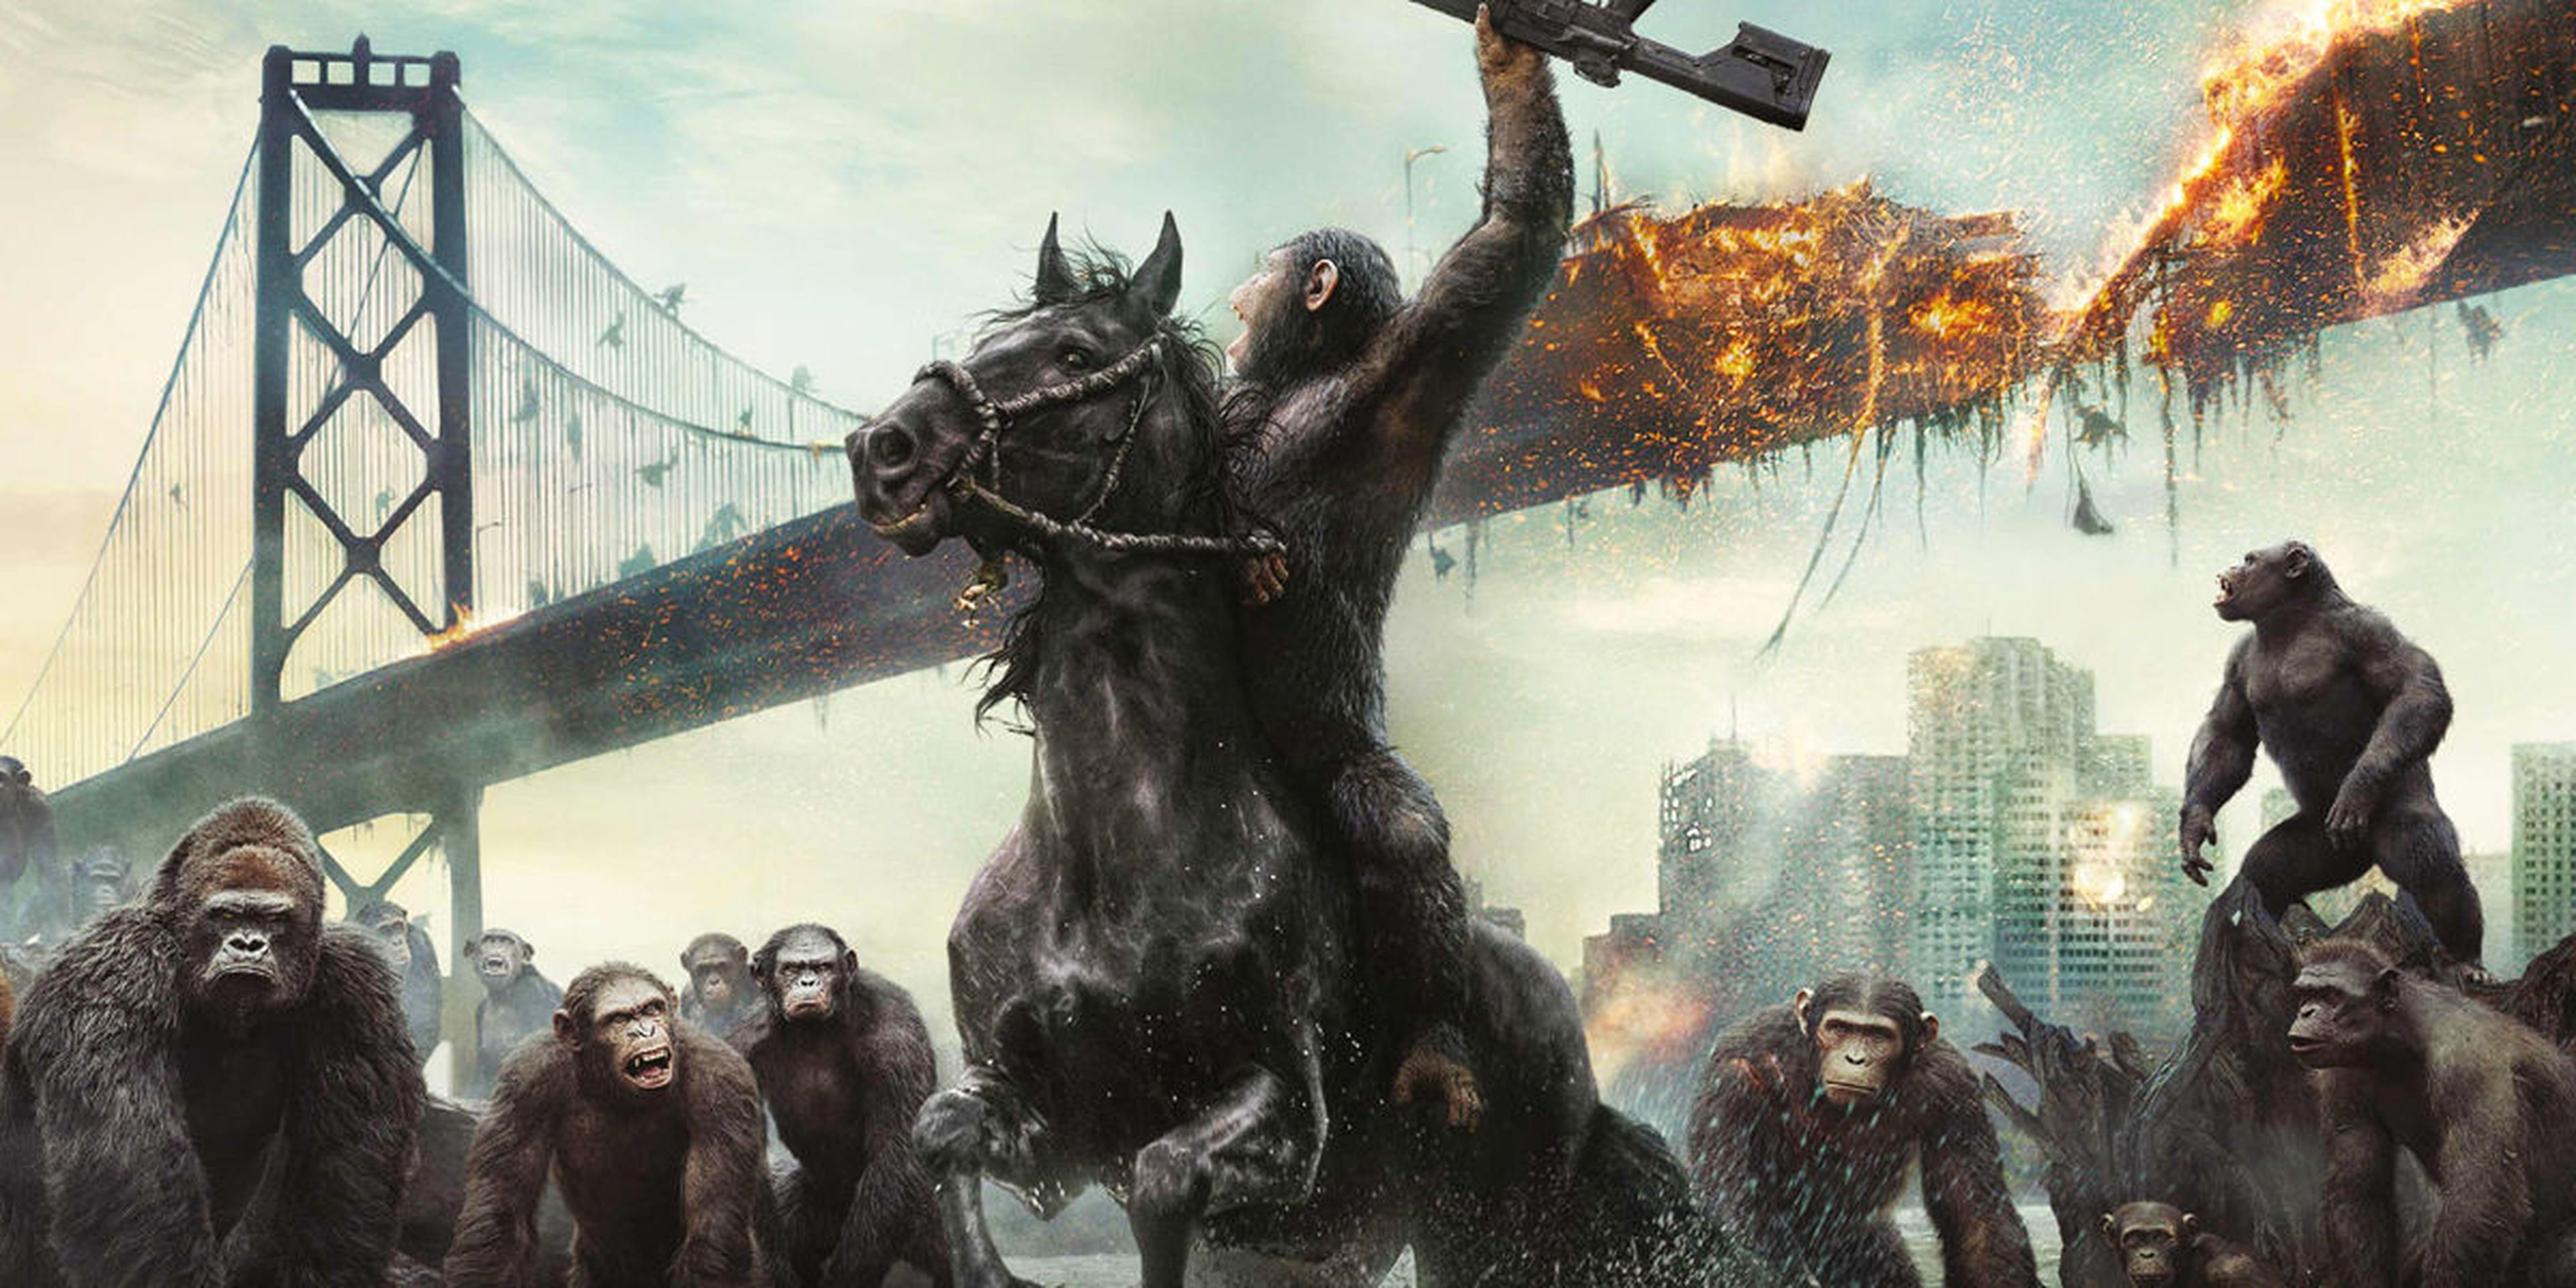 La guerra del planeta de los simios